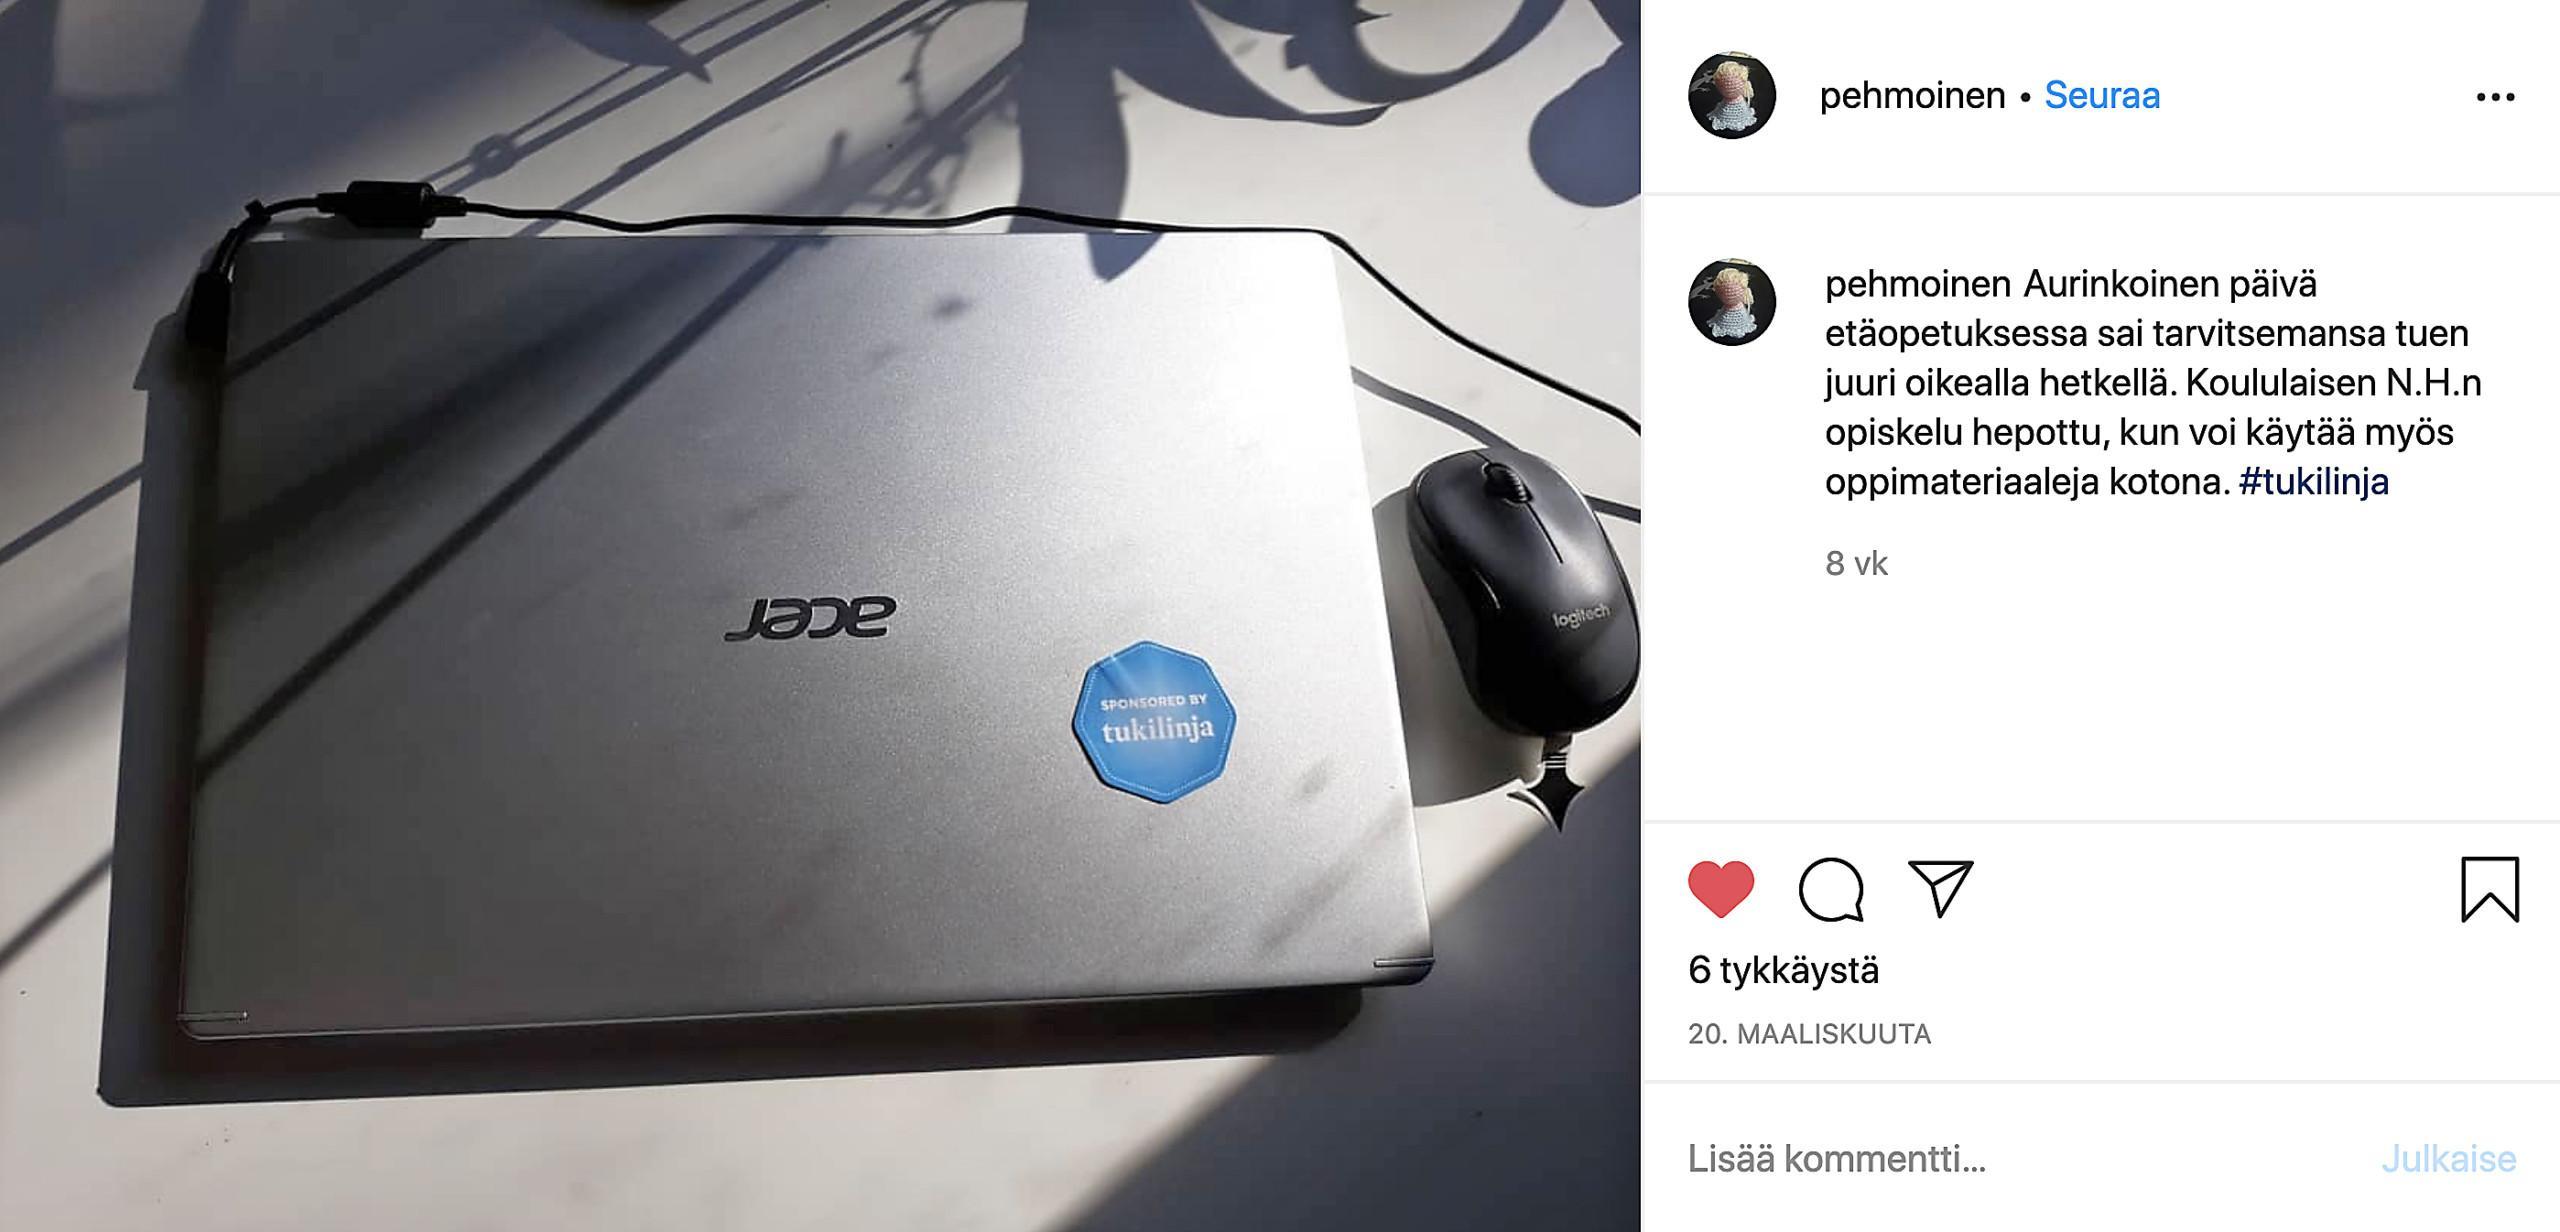 Instagramissa julkaistu kiitoskirje, jossa näkyy Tukilinjan sponsorilogo läppärin kannessa.